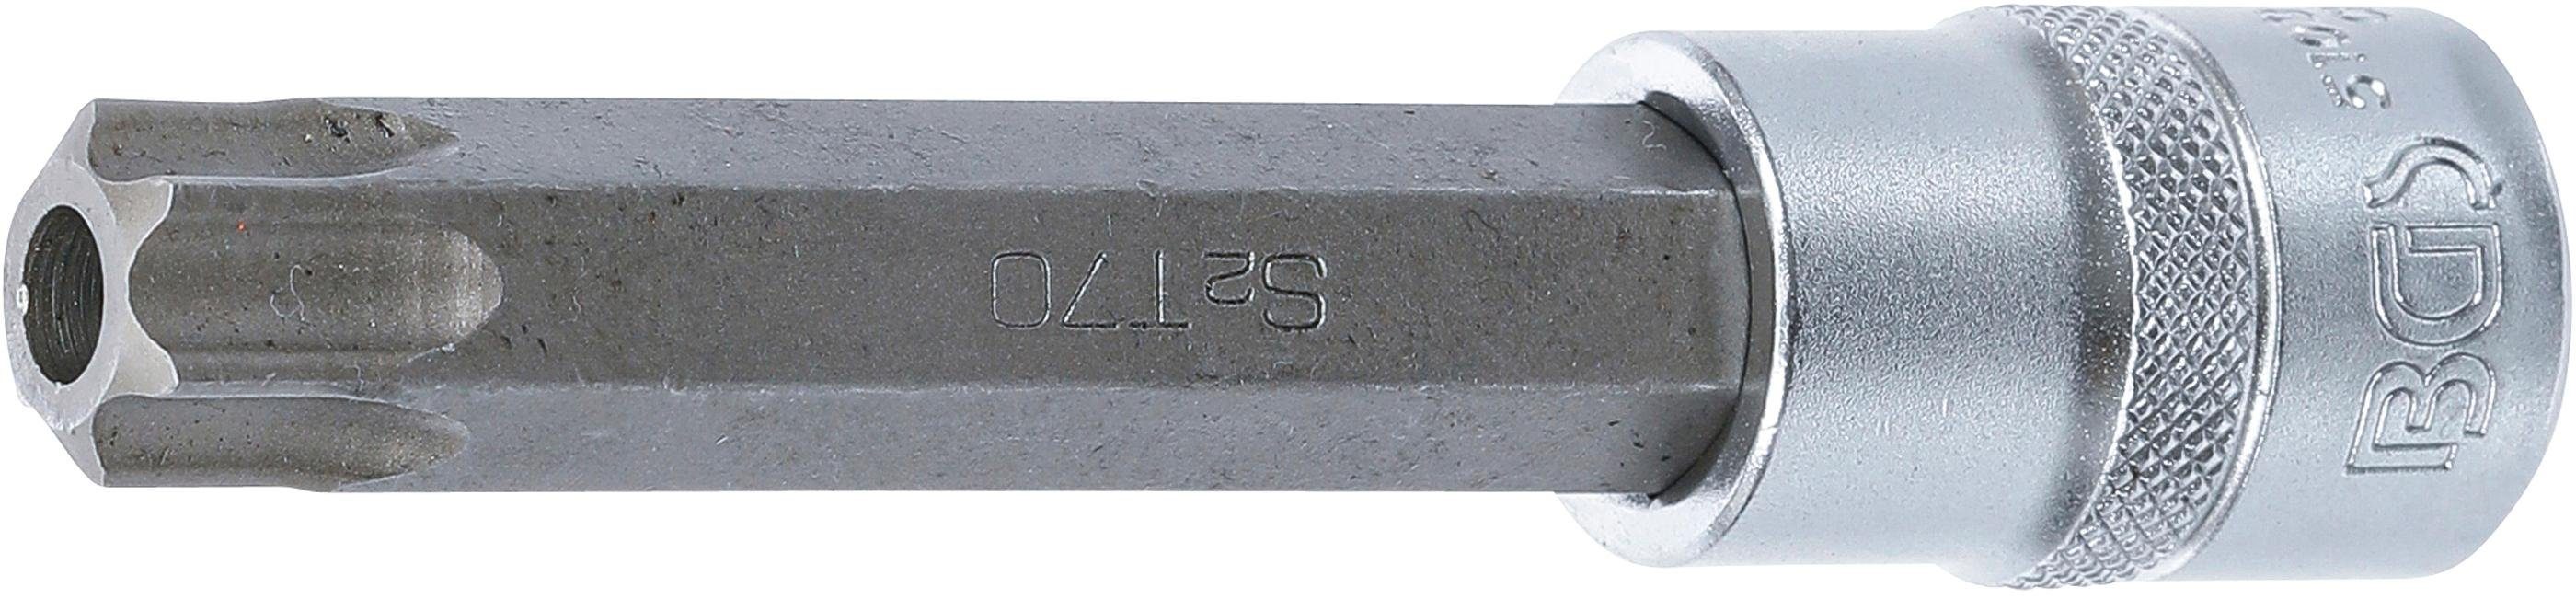 Bohrung BGS 12,5 (für (1/2), mm 110 mm, Länge Bit-Schraubendreher T70 technic T-Profil Bit-Einsatz, Innenvierkant mit Torx) Antrieb